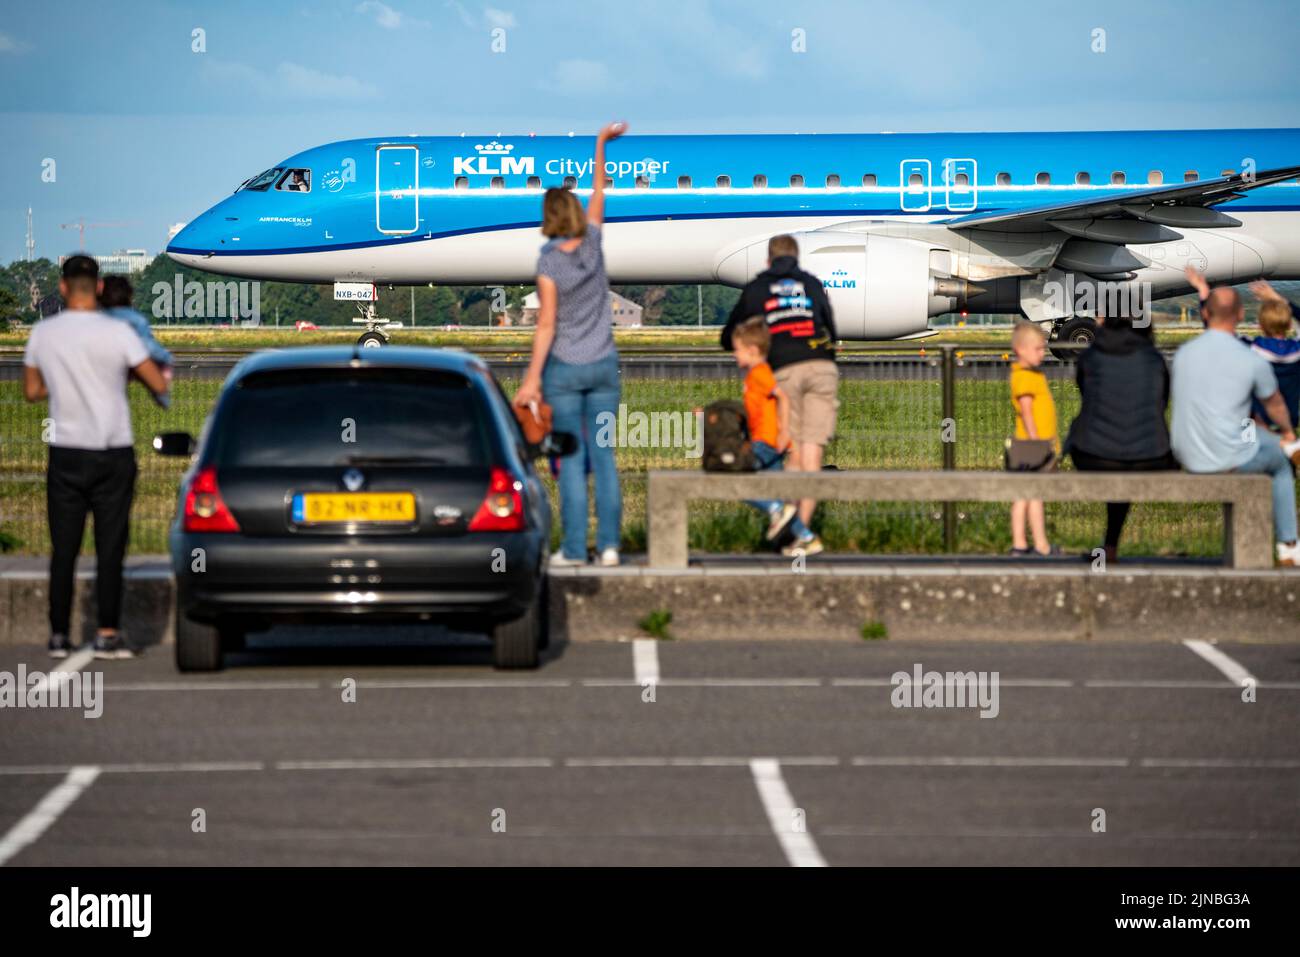 Amsterdam Shiphol Airport, Polderbaan, eine von 6 Start- und Landebahnen, Spotter Spot, Flugzeuge aus nächster Nähe, KLM-Flugzeug, Stockfoto